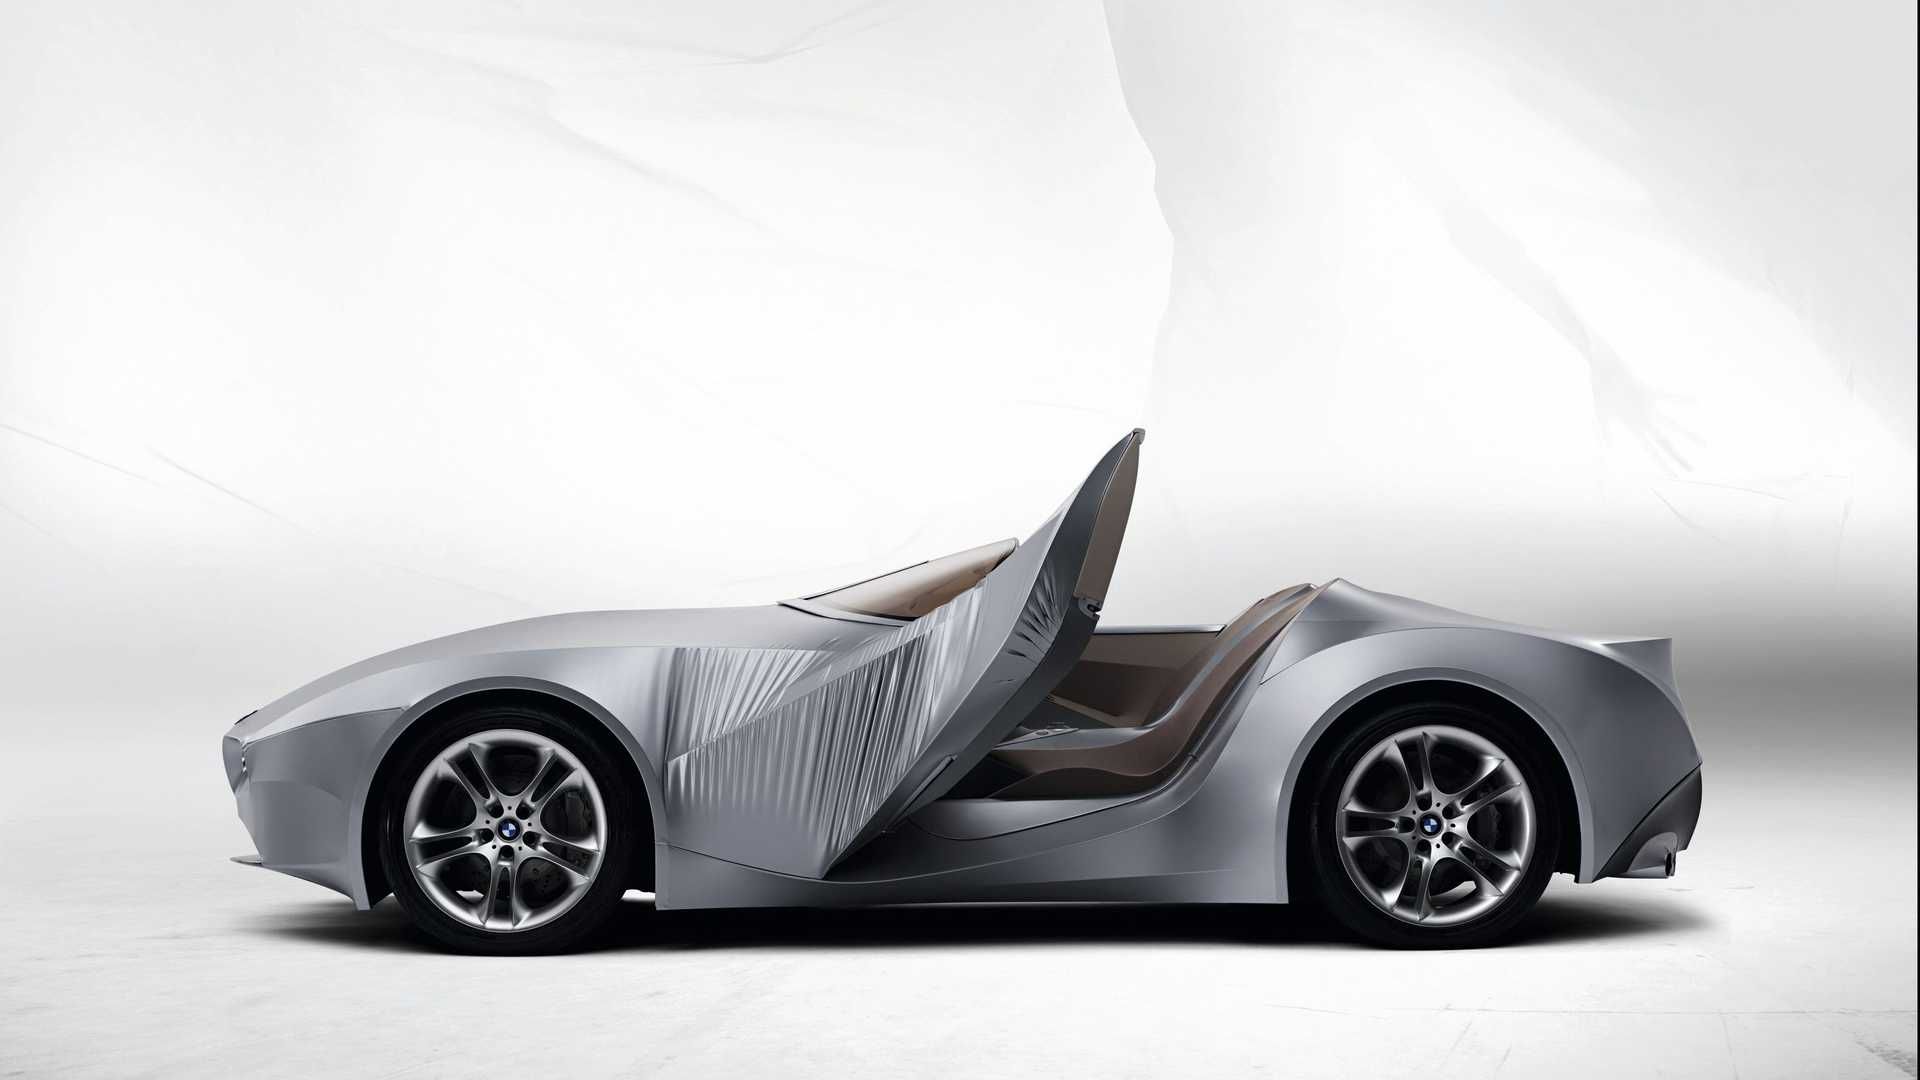 مرجع متخصصين ايران نماي جانبي خودروي مفهومي روباز بي ام و گينا / BMW GINA concept convertible با بدنه پارچه اي